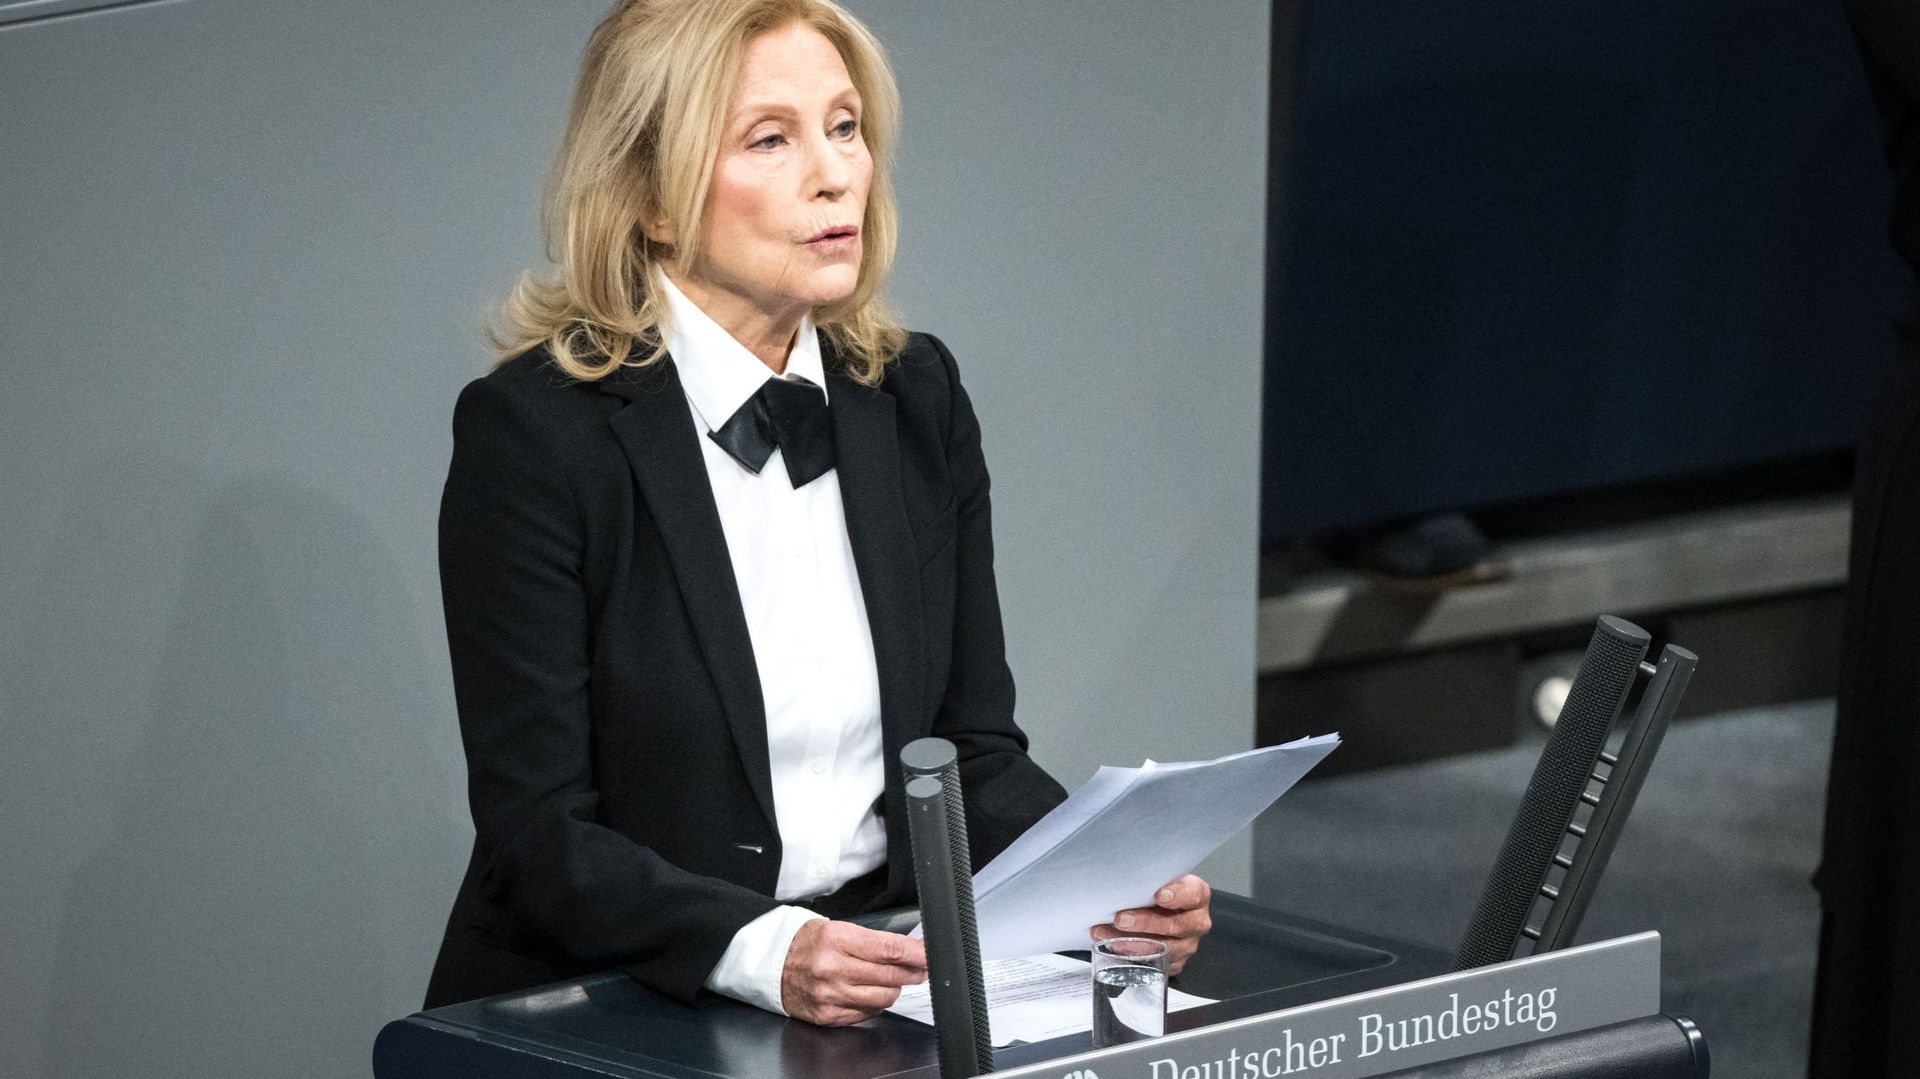 L’actrice allemande Maren Kroymann lit un texte sur la victime homosexuelle de l’Holocauste, Mary Puenjer, lors de la cérémonie annuelle à la mémoire des victimes et des survivants de l’Holocauste dans la salle plénière du Bundestag, la chambre basse du p